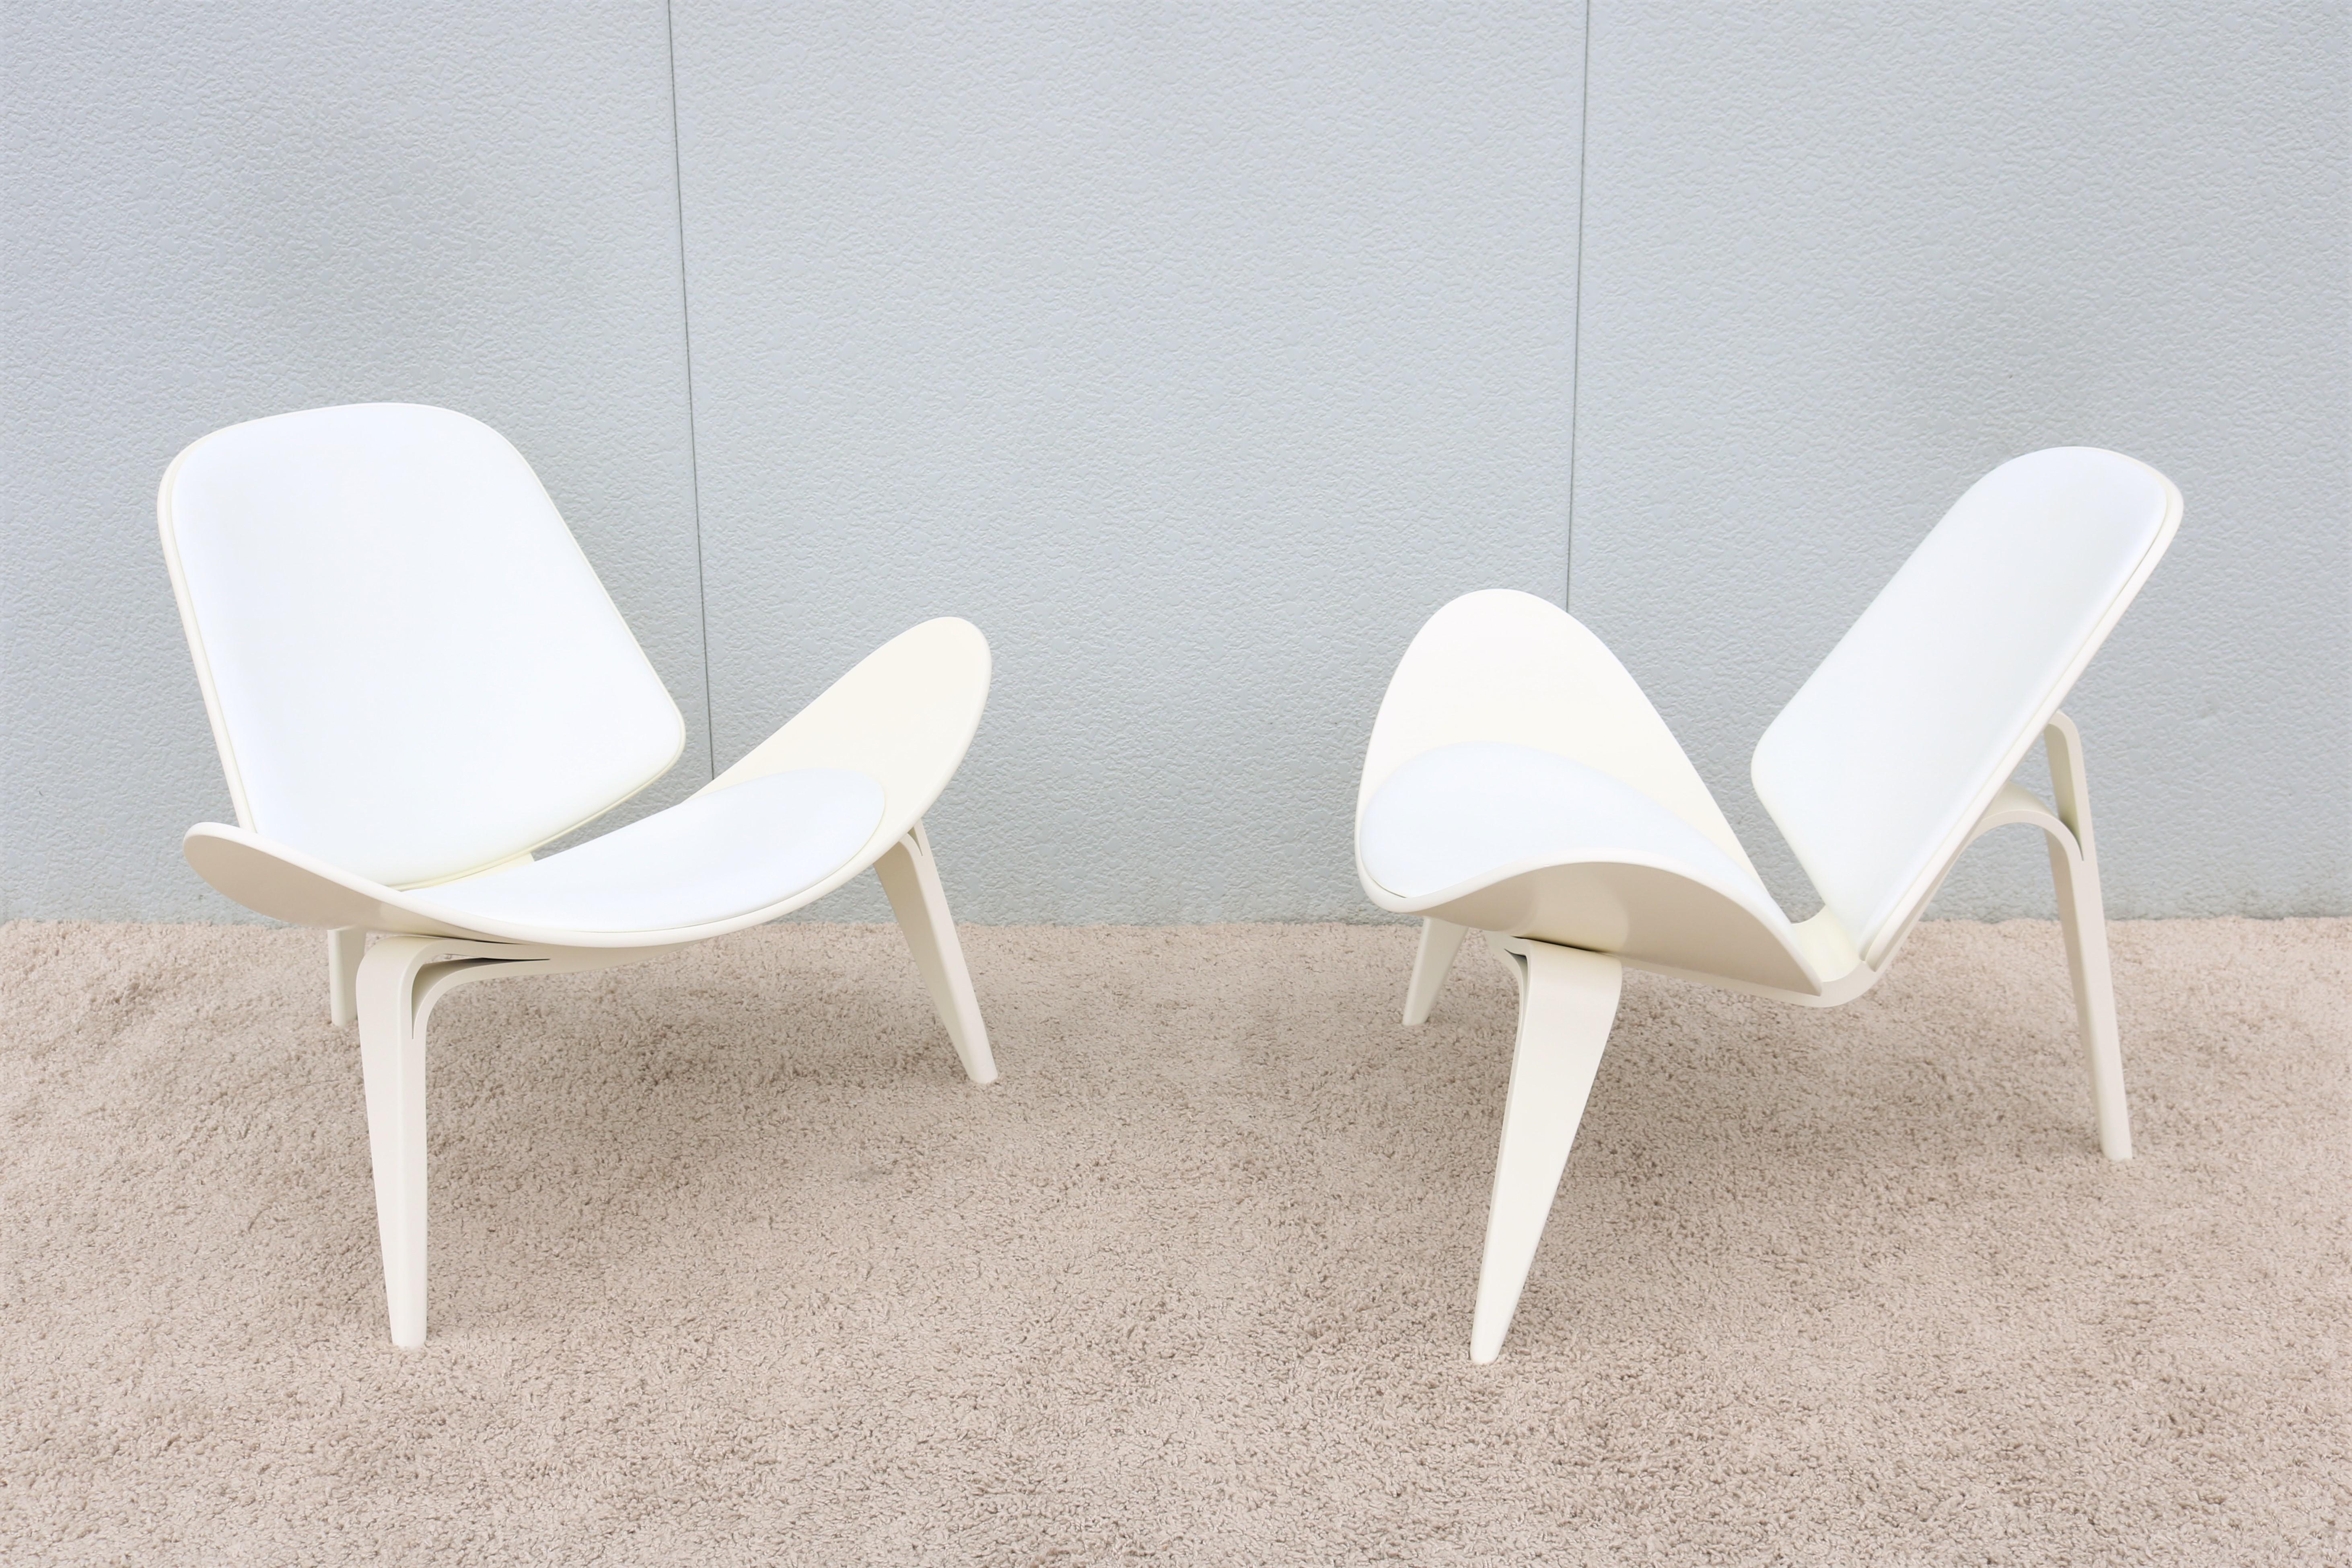 Danois Paire de chaises coquillage CH07 de Hans J. Wegner pour Carl Hansen, de style danois moderne du milieu du siècle dernier en vente